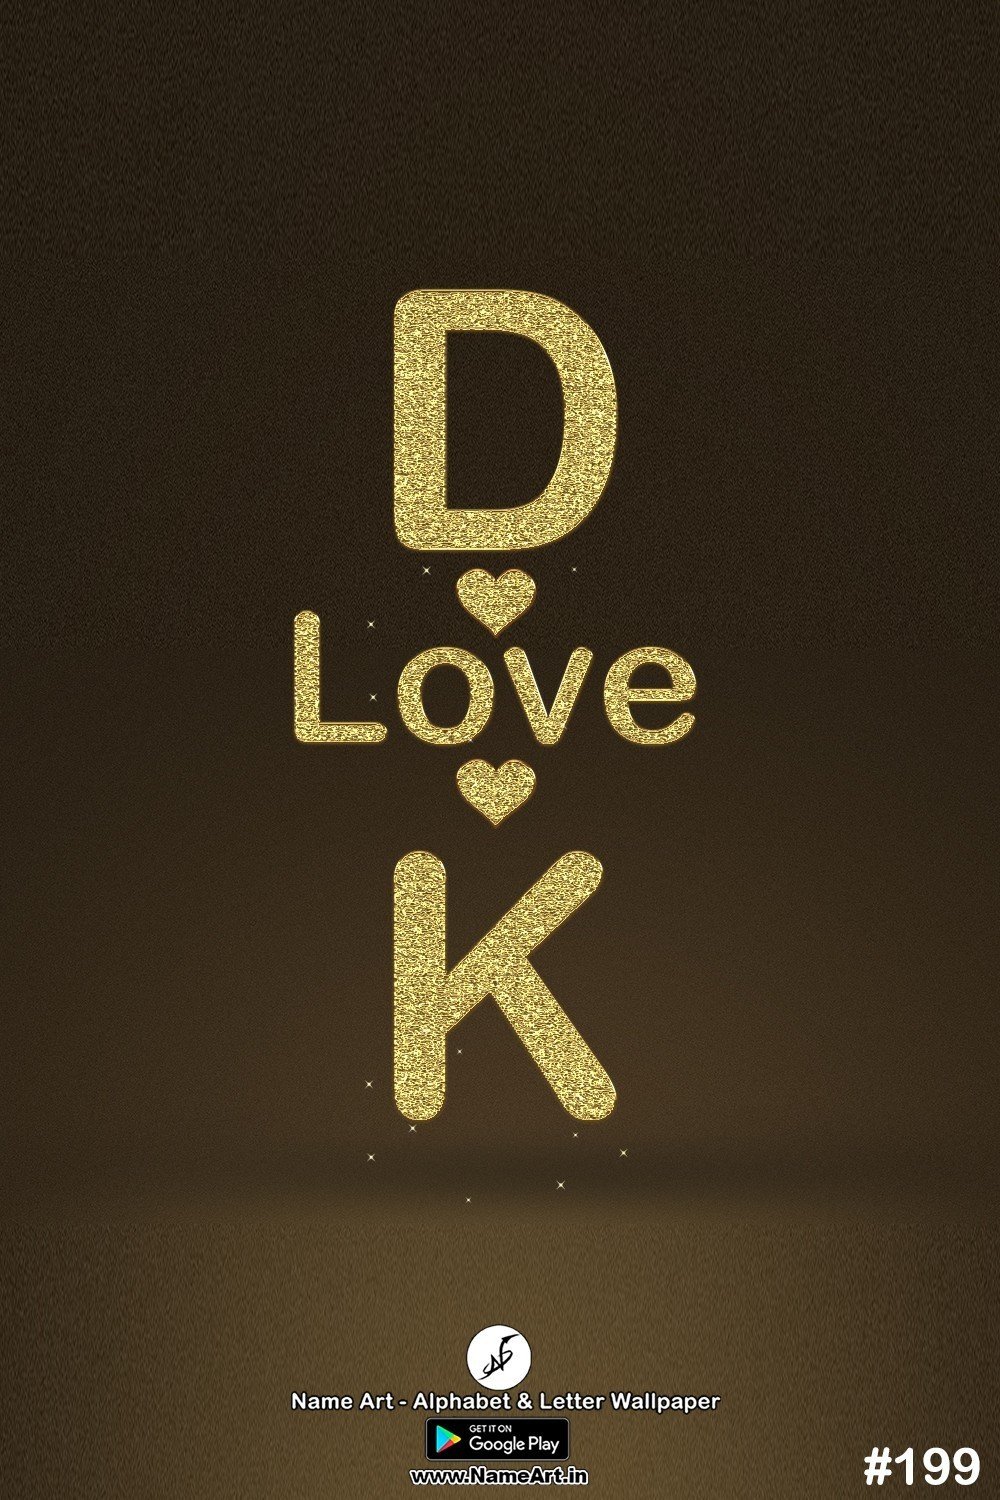 DK | Whatsapp Status DP DK | DK Golden Love Status Cute Couple Whatsapp Status DP !! | New Whatsapp Status DP DK Images |